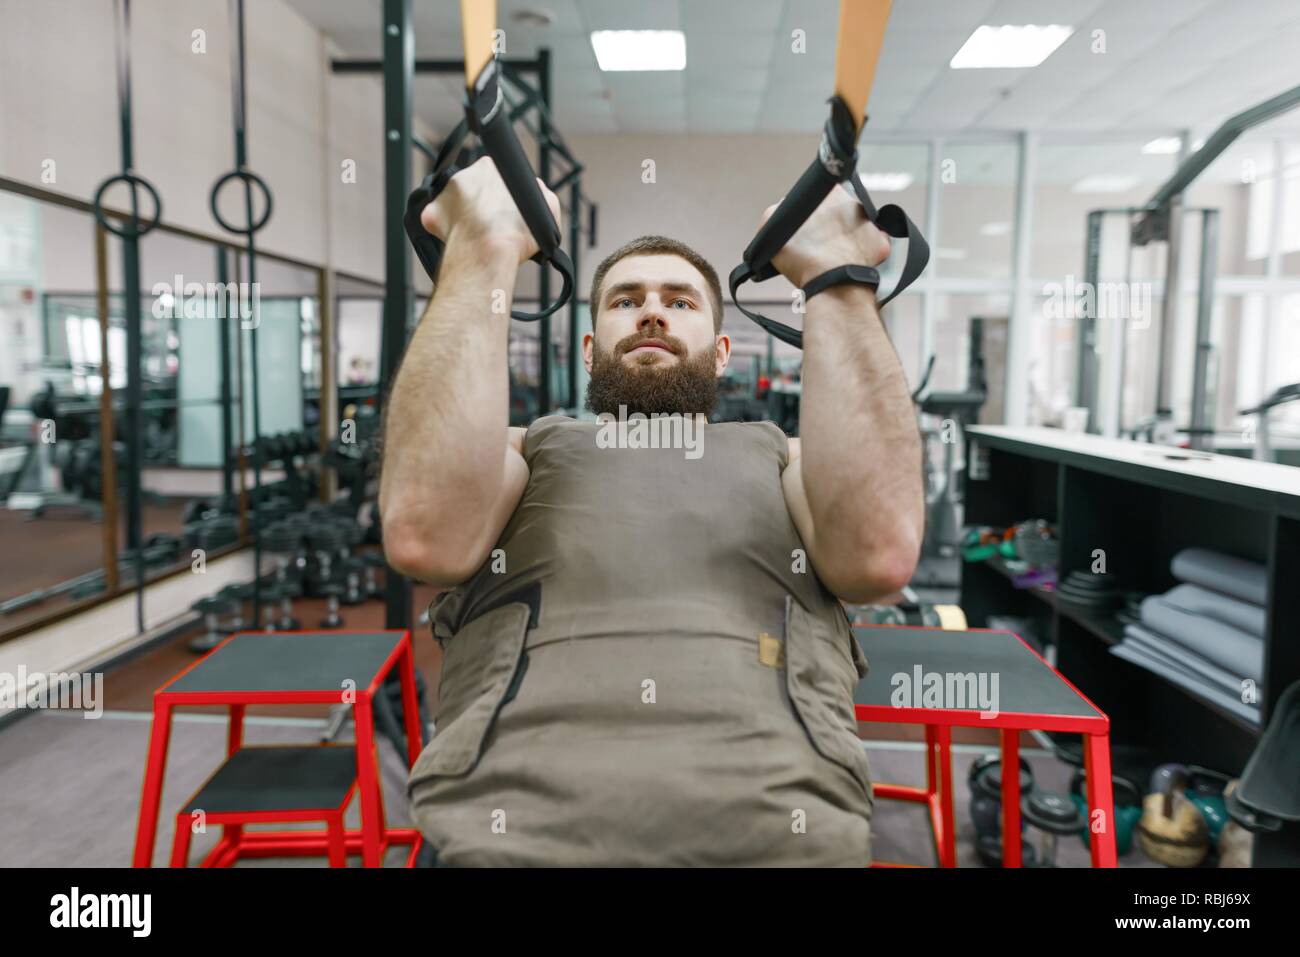 Deporte Militar, musculoso caucásico barbado hombre adulto, hacer ejercicios en el gimnasio vestida con un chaleco blindado a prueba de balas. Foto de stock